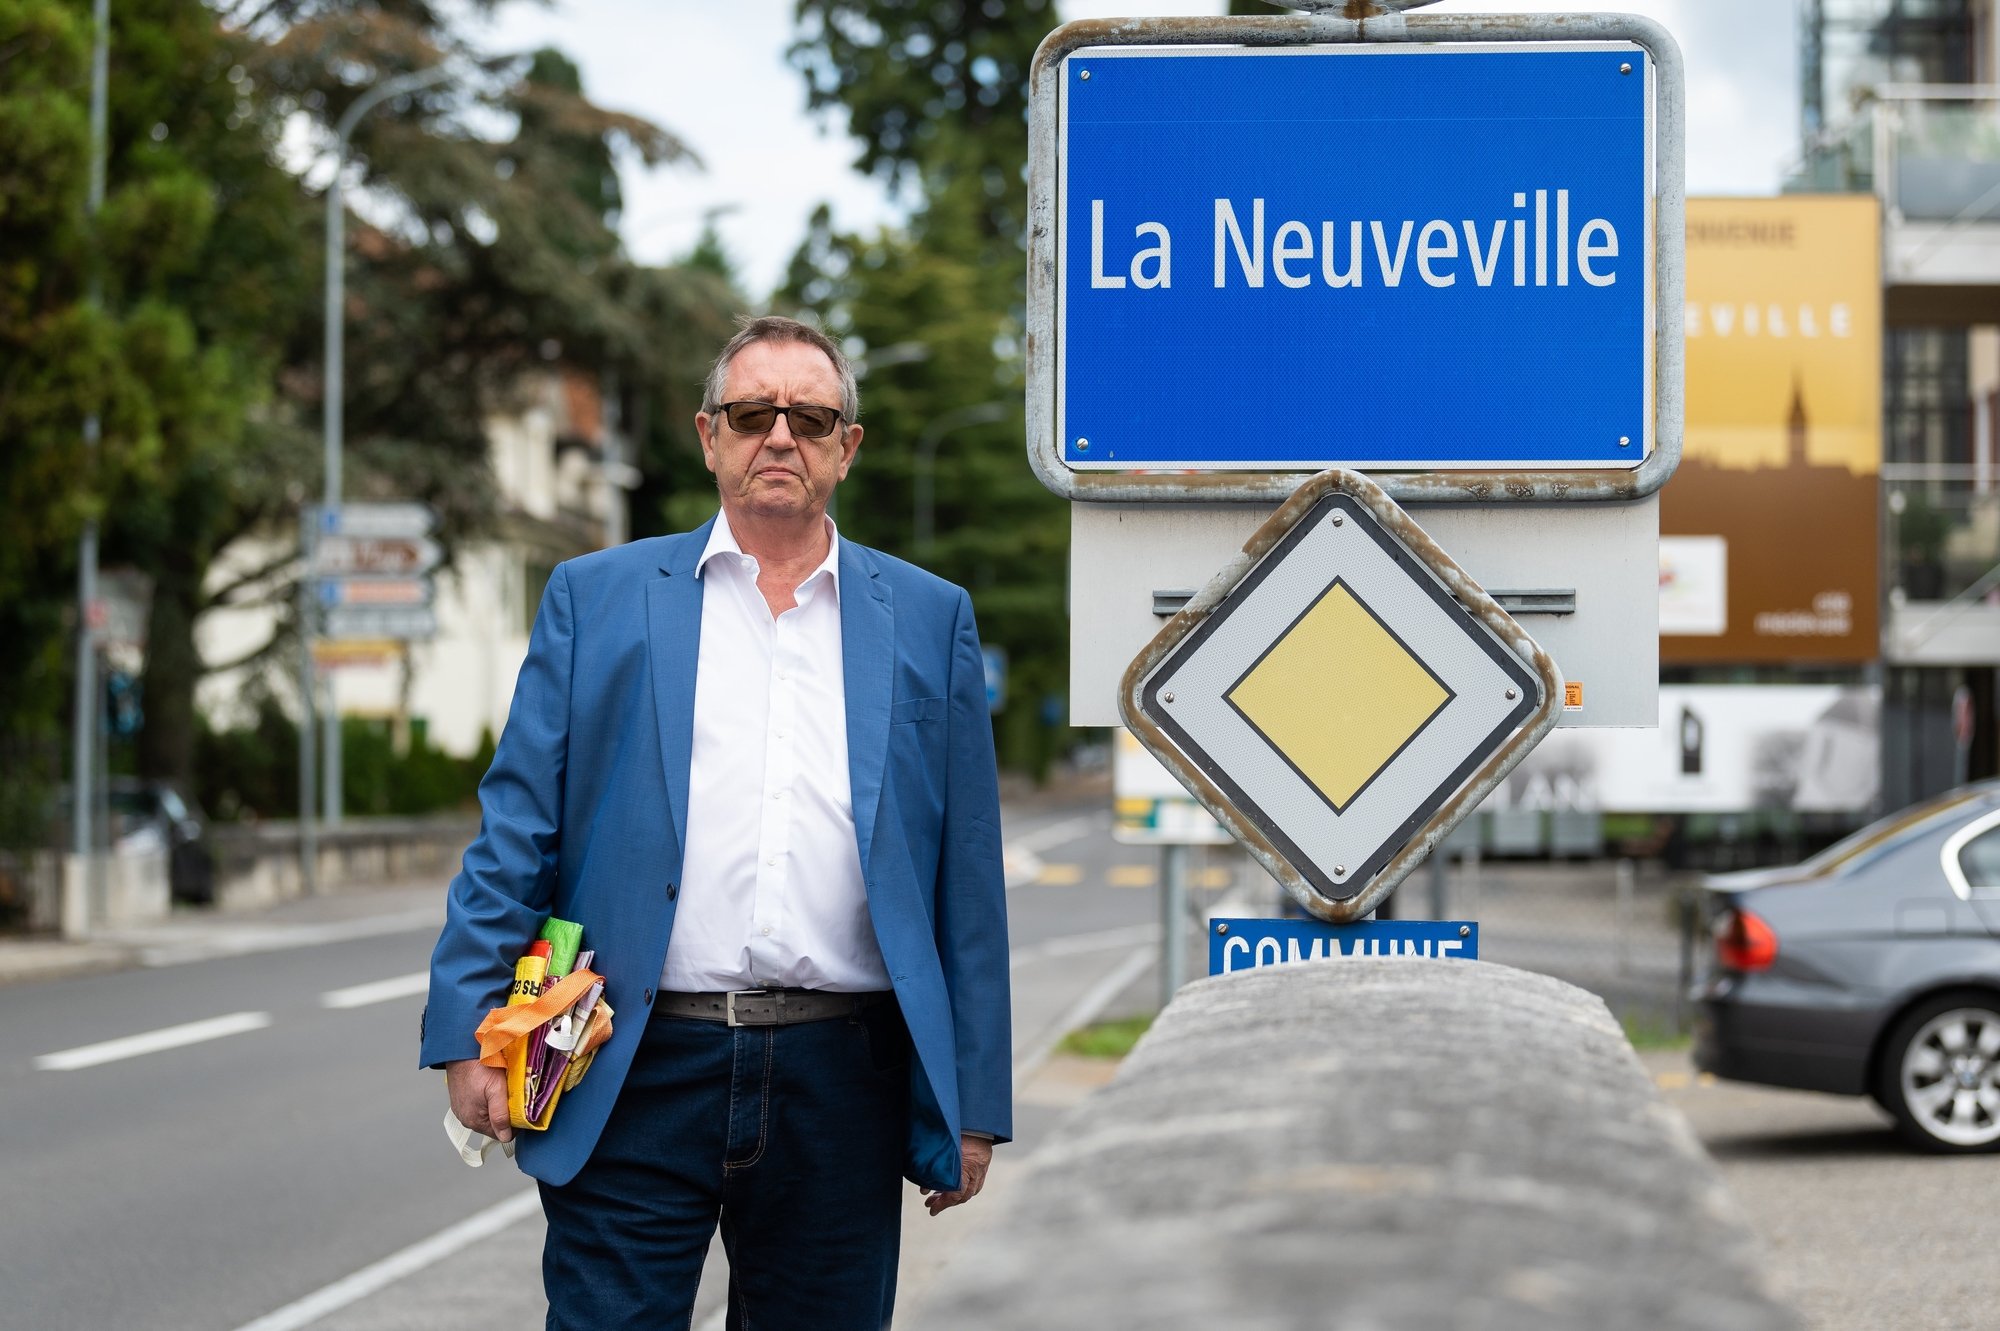 Désormais, c’est à La Neuveville qu'Eric Fischer va faire ses courses puisque le canton de Berne n’oblige pas les citoyens à se masquer dans les centres commerciaux.